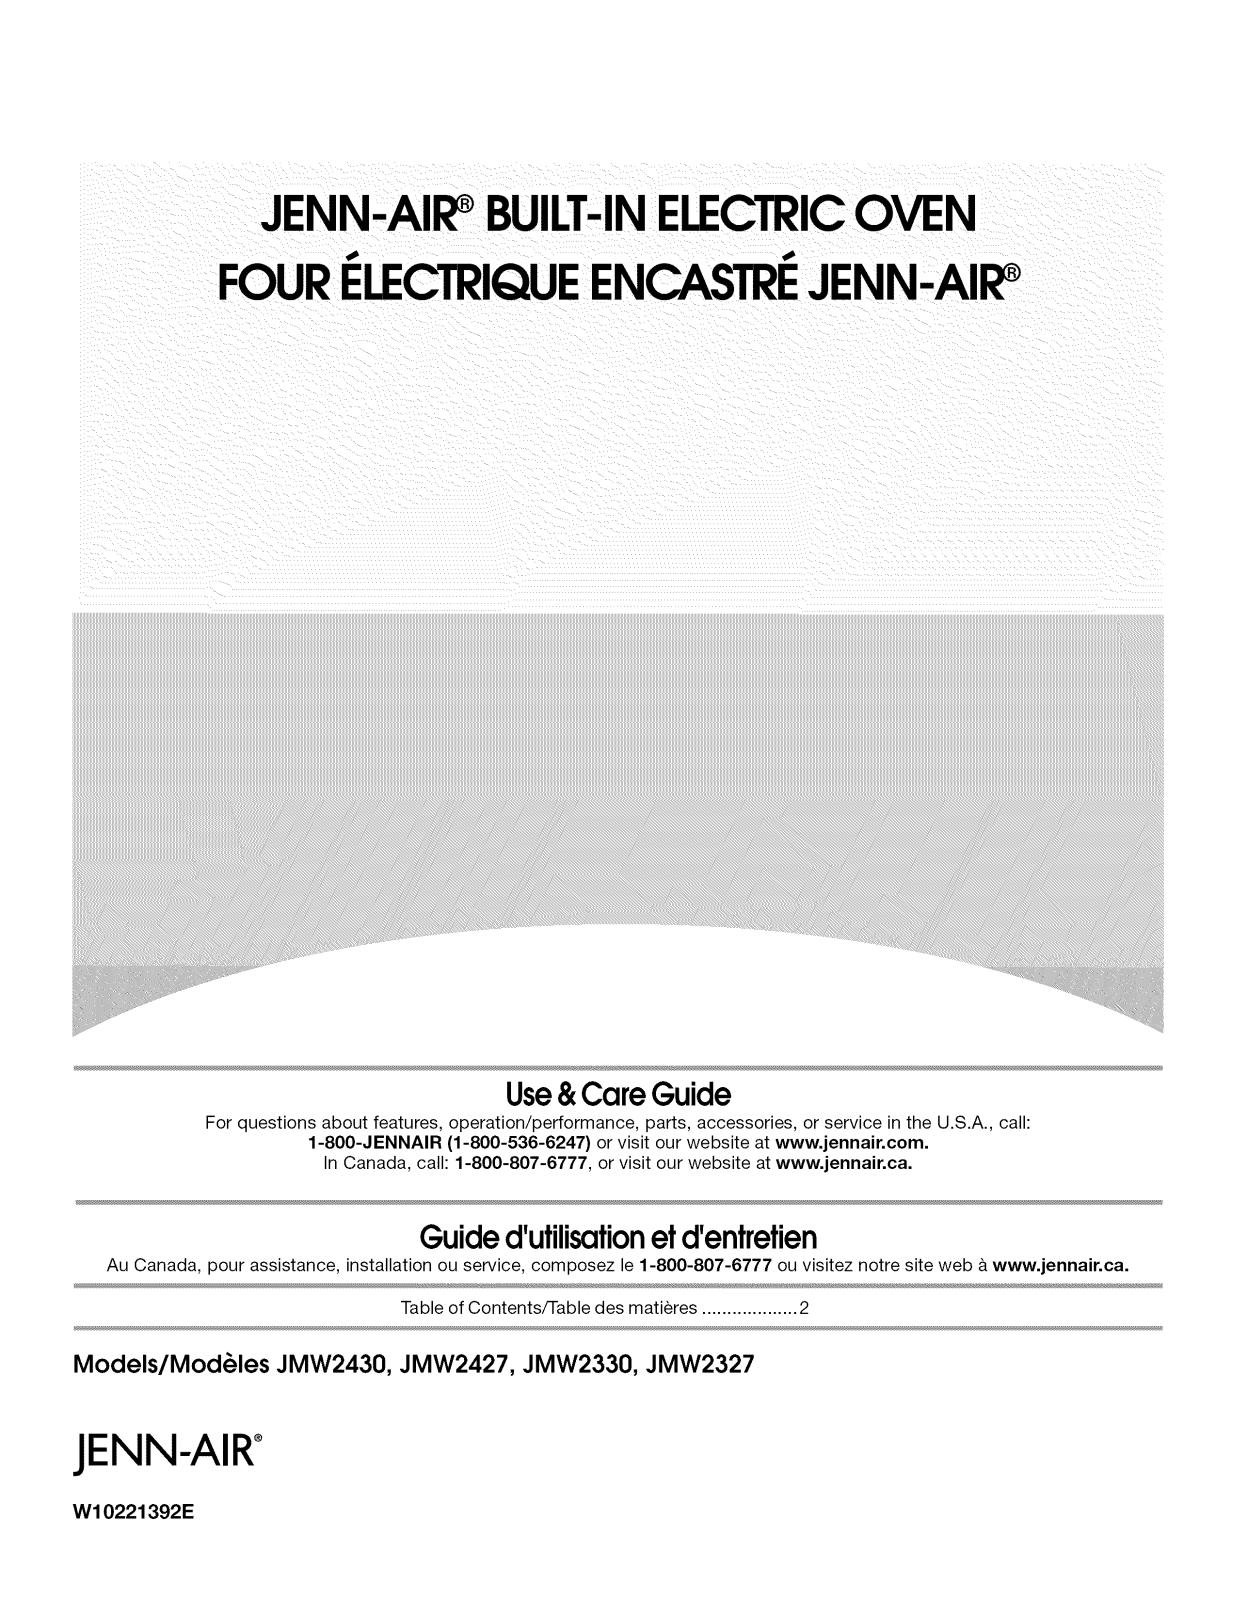 Jenn-Air JMW2430WW00, JMW2430WS01, JMW2430WS00, JMW2430WR01, JMW2430WR00 Owner’s Manual